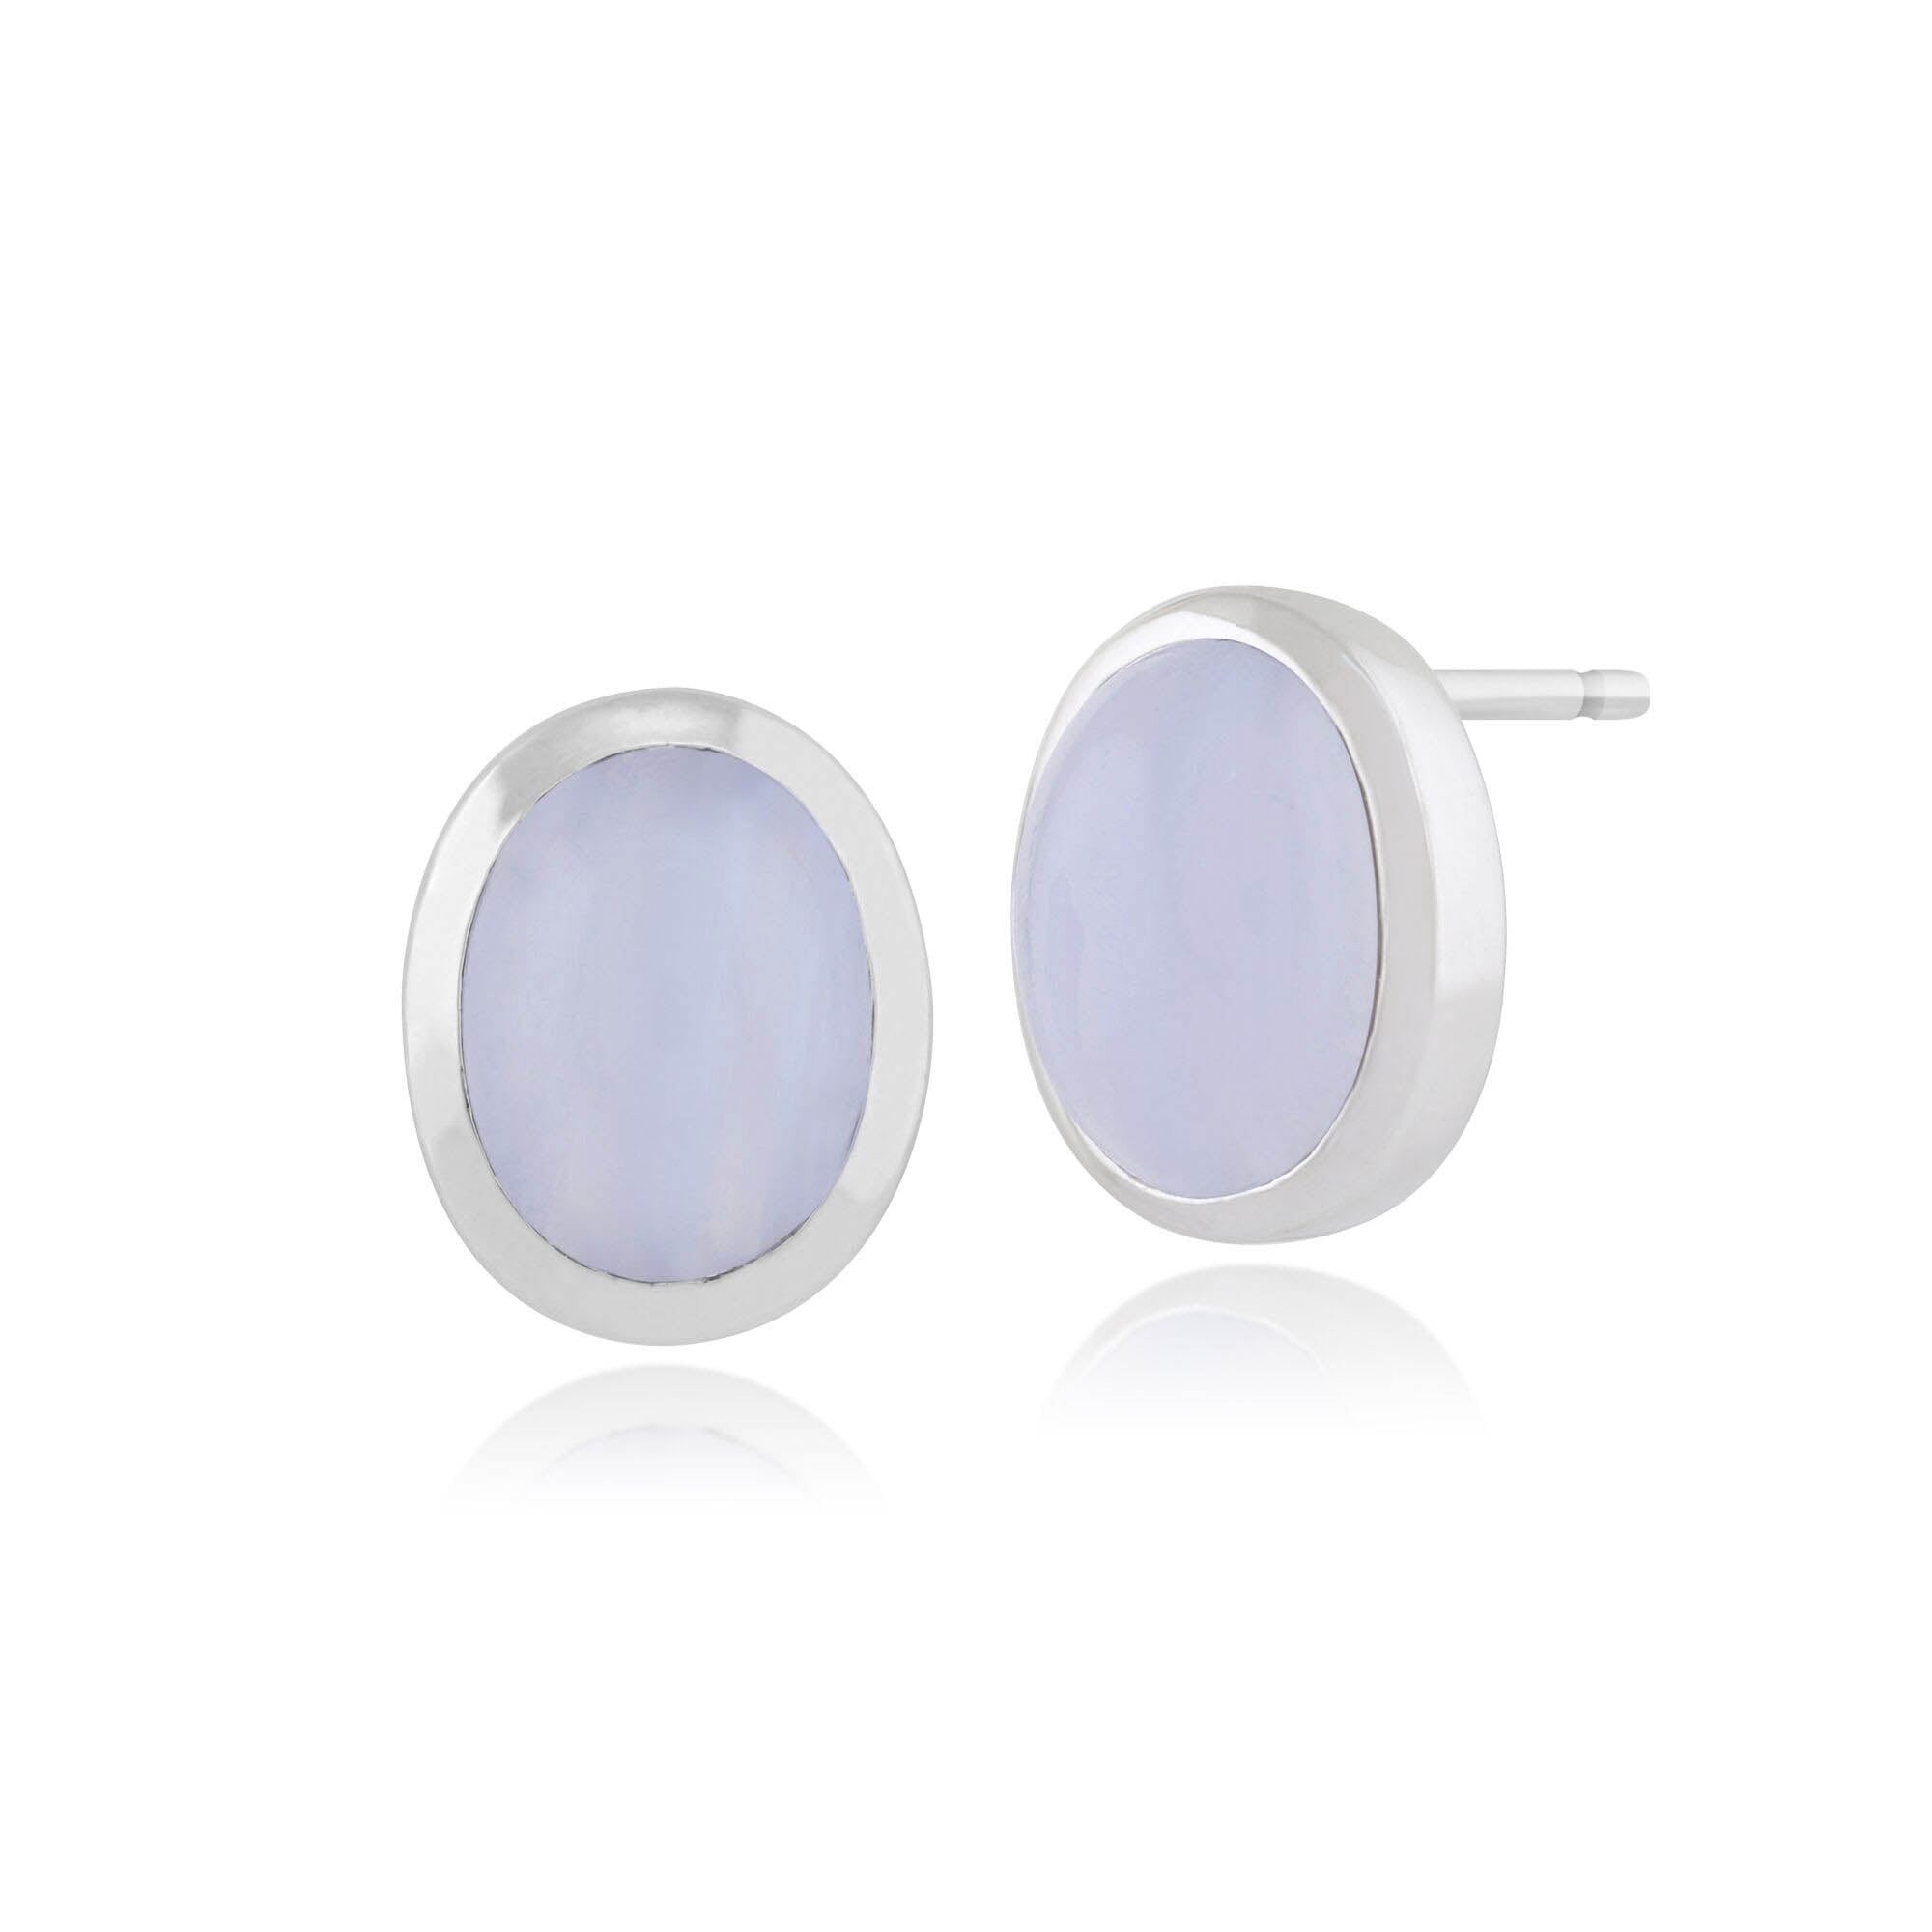 Classic Oval Blue Lace Agate Bezel Set Stud Earrings in 925 Sterling Silver - Gemondo